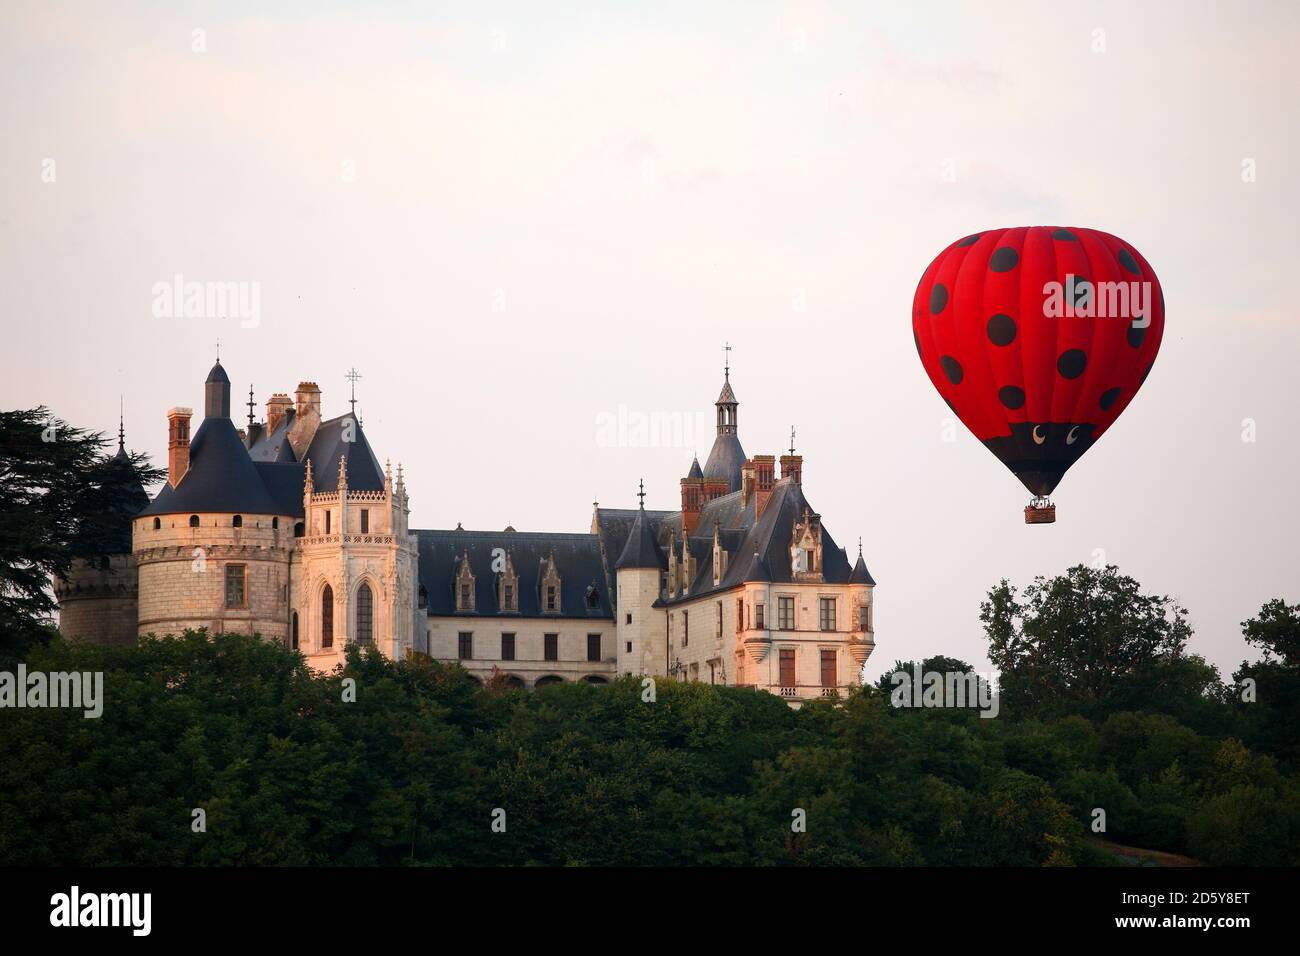 Francia, Chaumont-sur-Loire, vista al castillo de Chaumont y globo de aire en primer plano Foto de stock